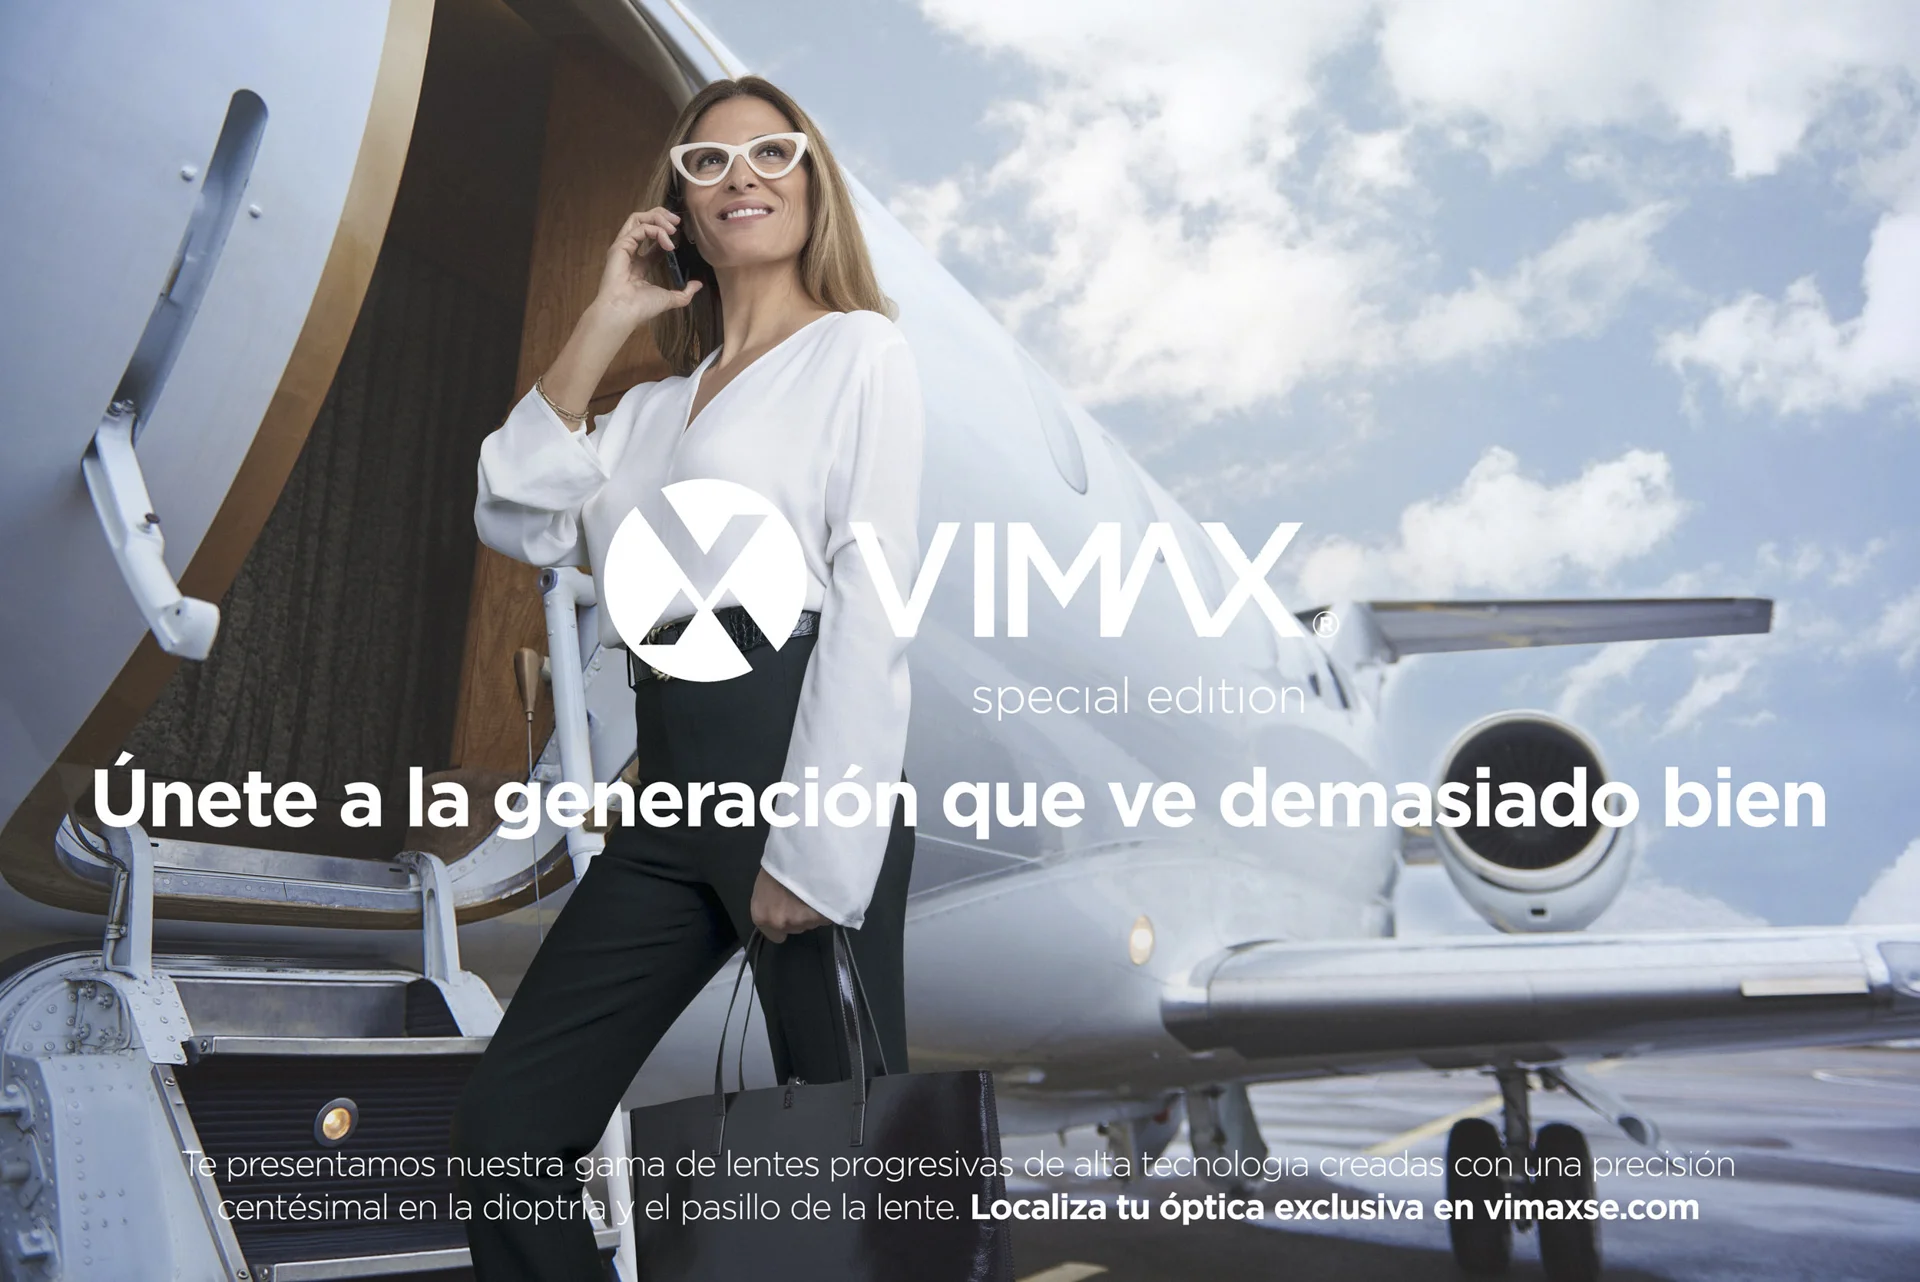 Campaña publicitaria producto de la marca de monturas y cristales VIMAX